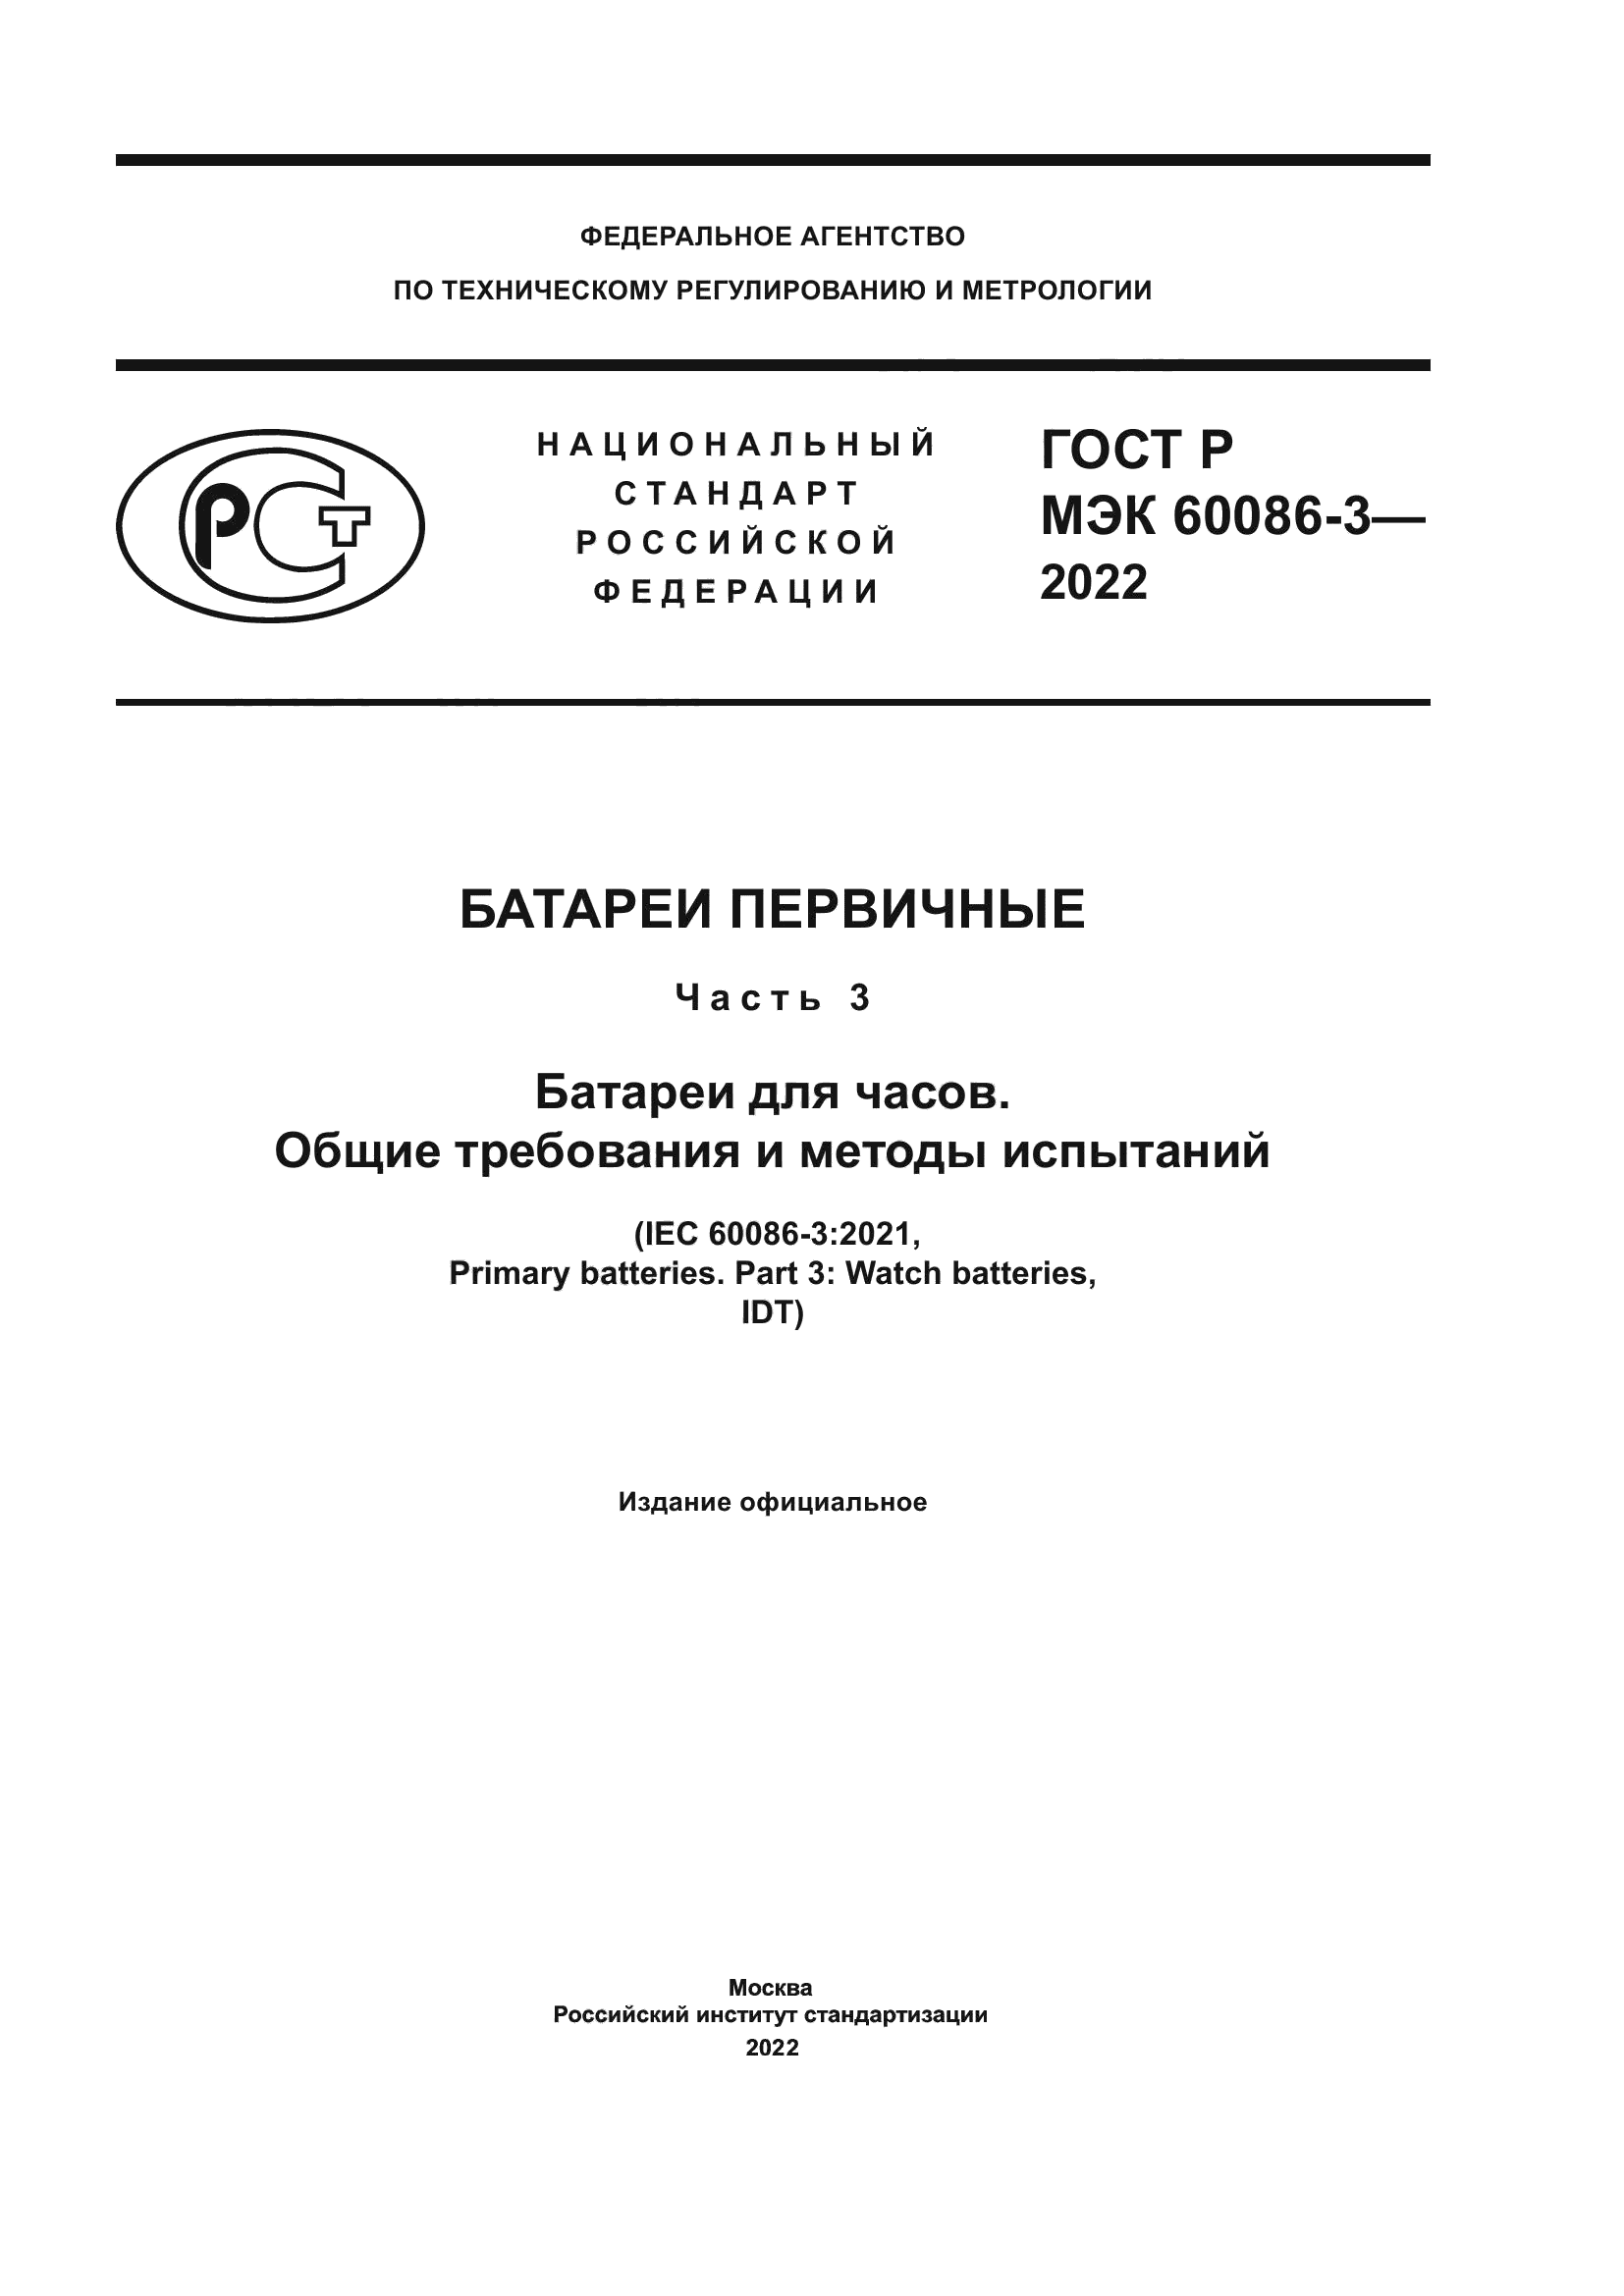 ГОСТ Р МЭК 60086-3-2022